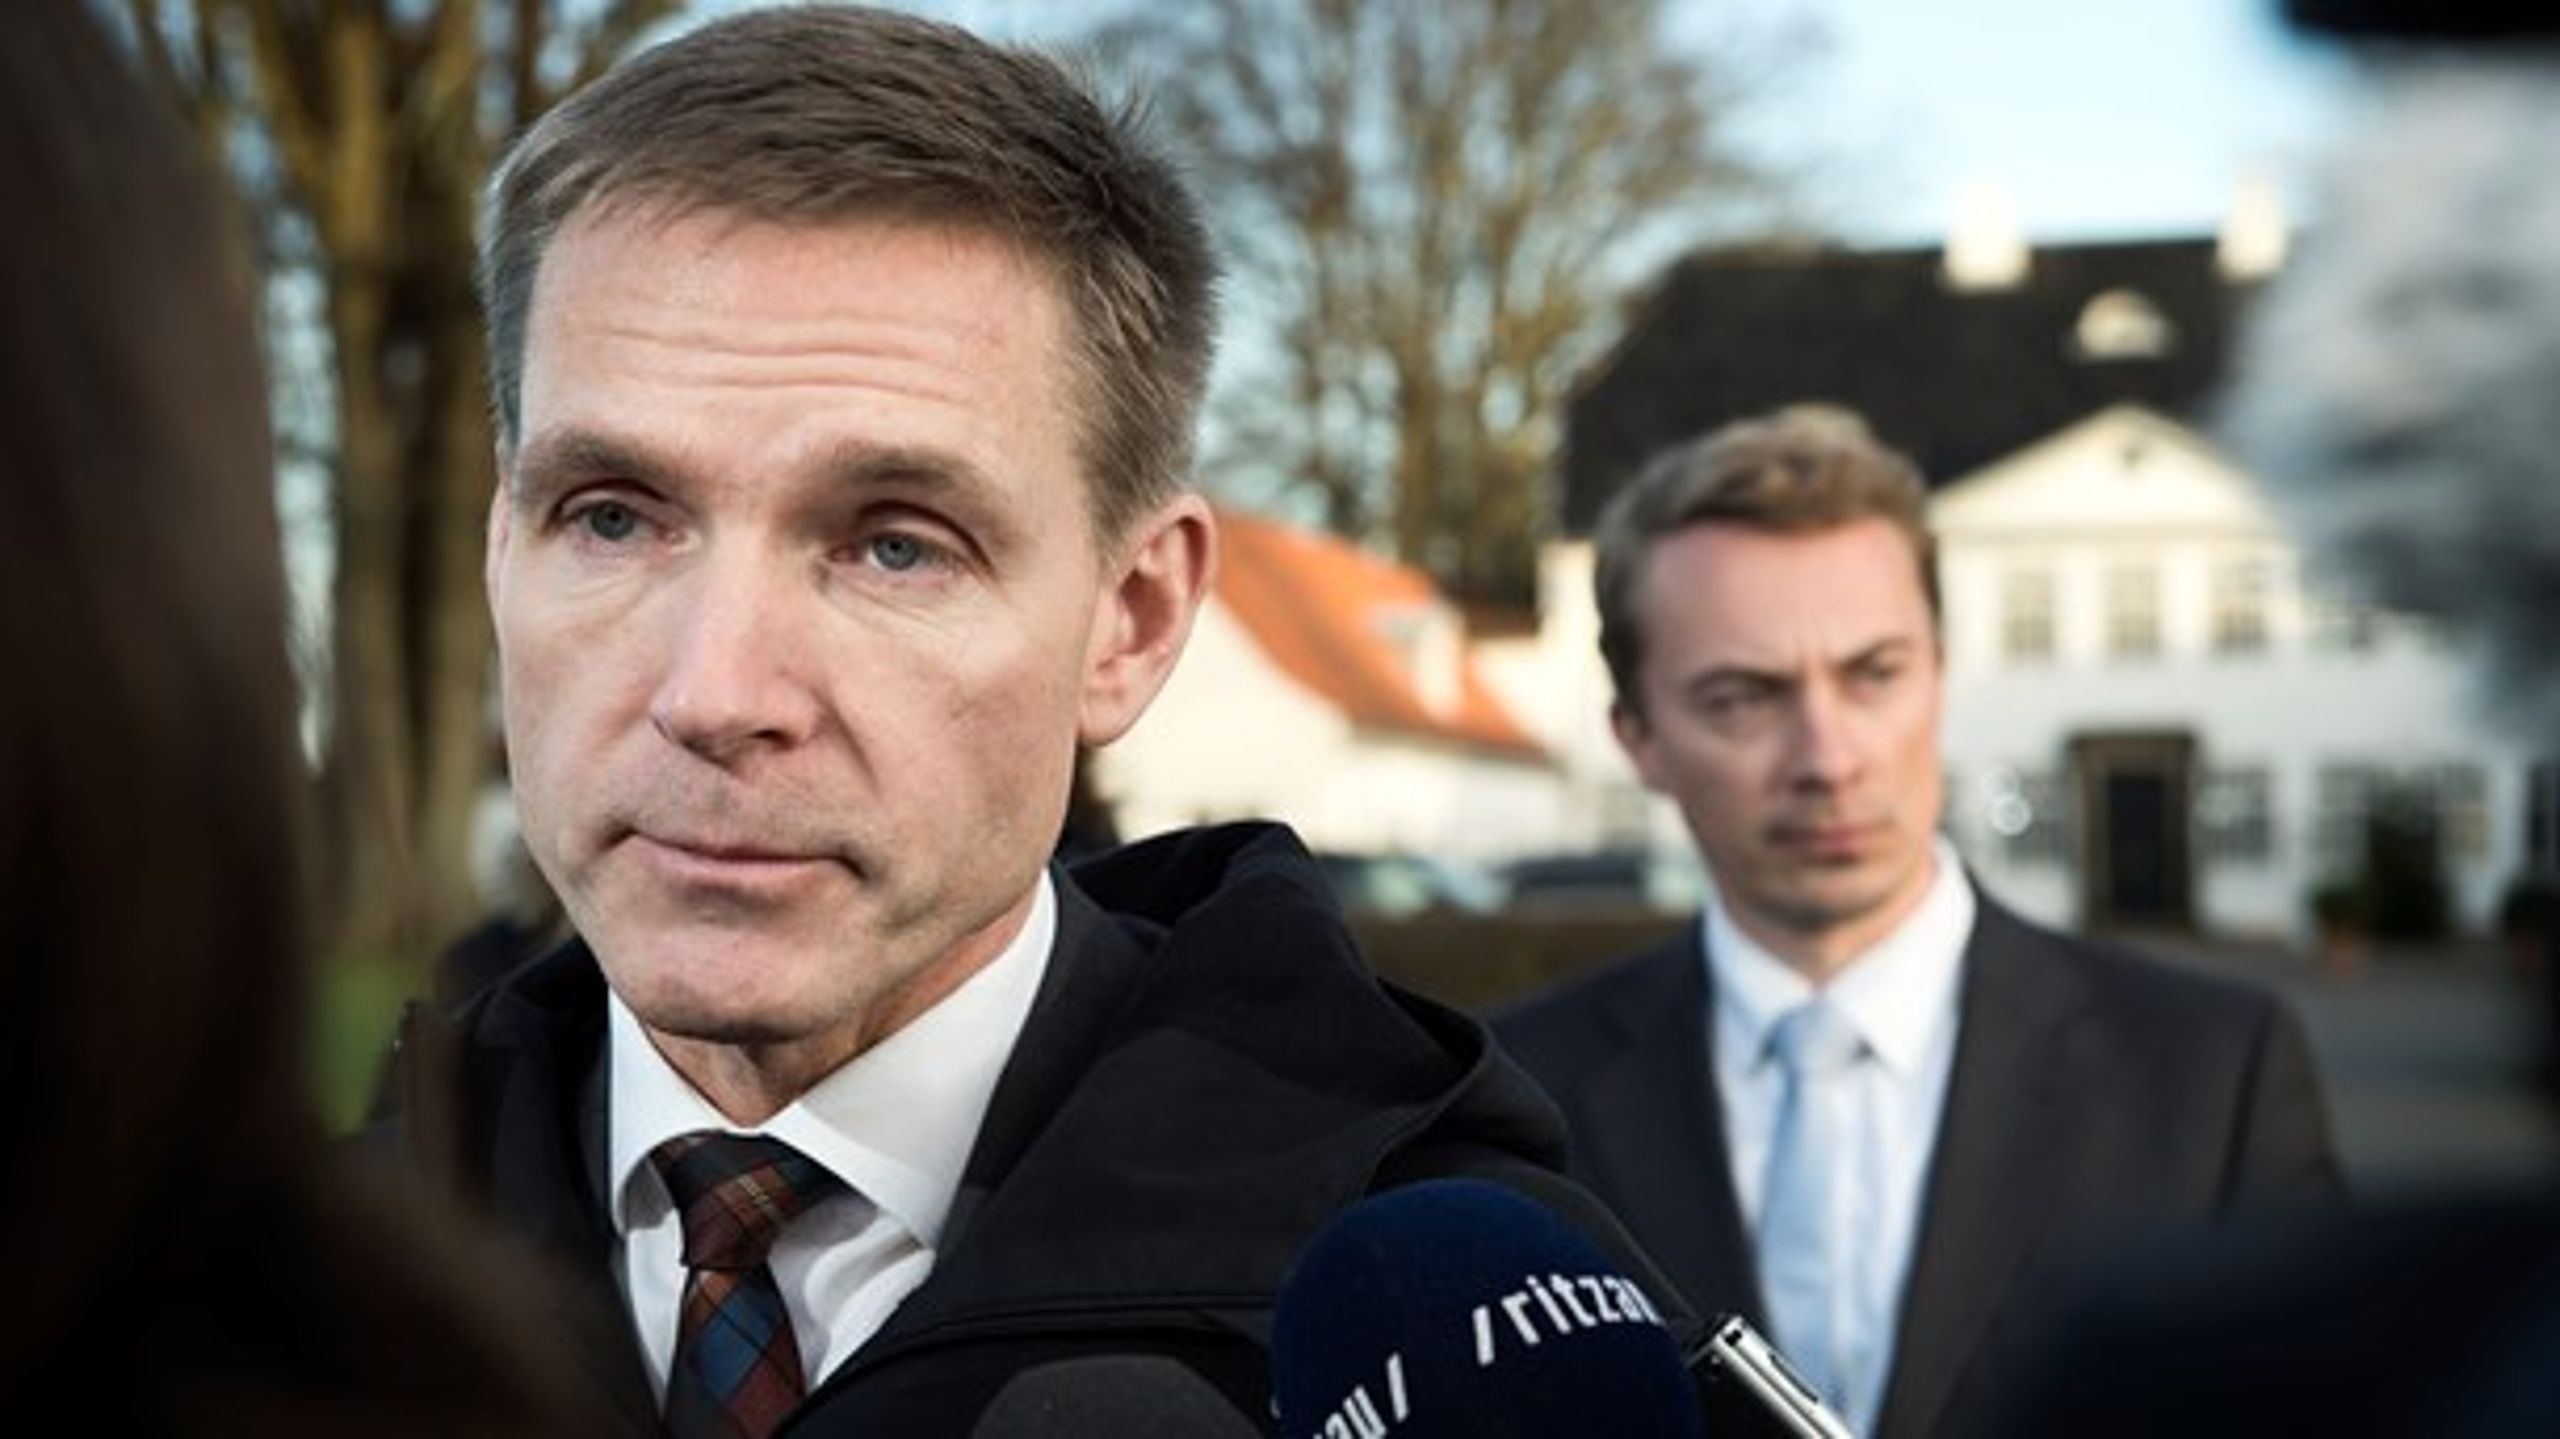 Dansk Folkeparti skylder deres vælgere et klart svar i EU-politikken, skriver&nbsp;Niels Fuglsang (S).